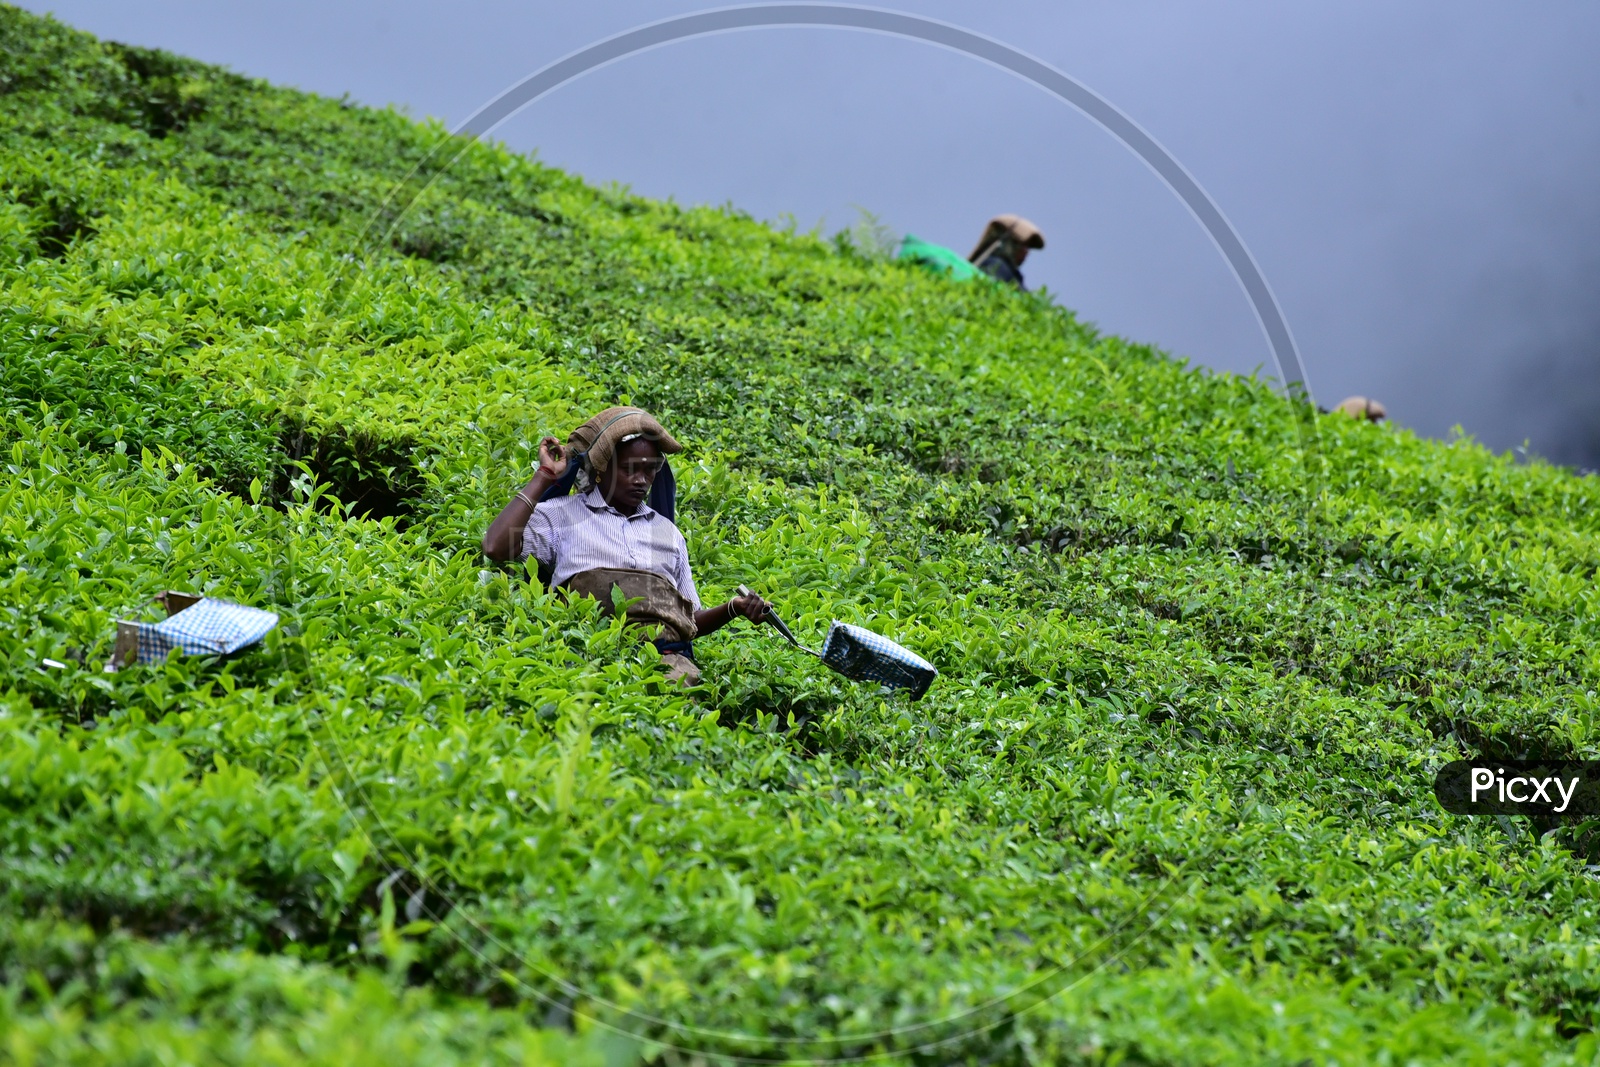 Woman Working at Munnar Tea Plantations